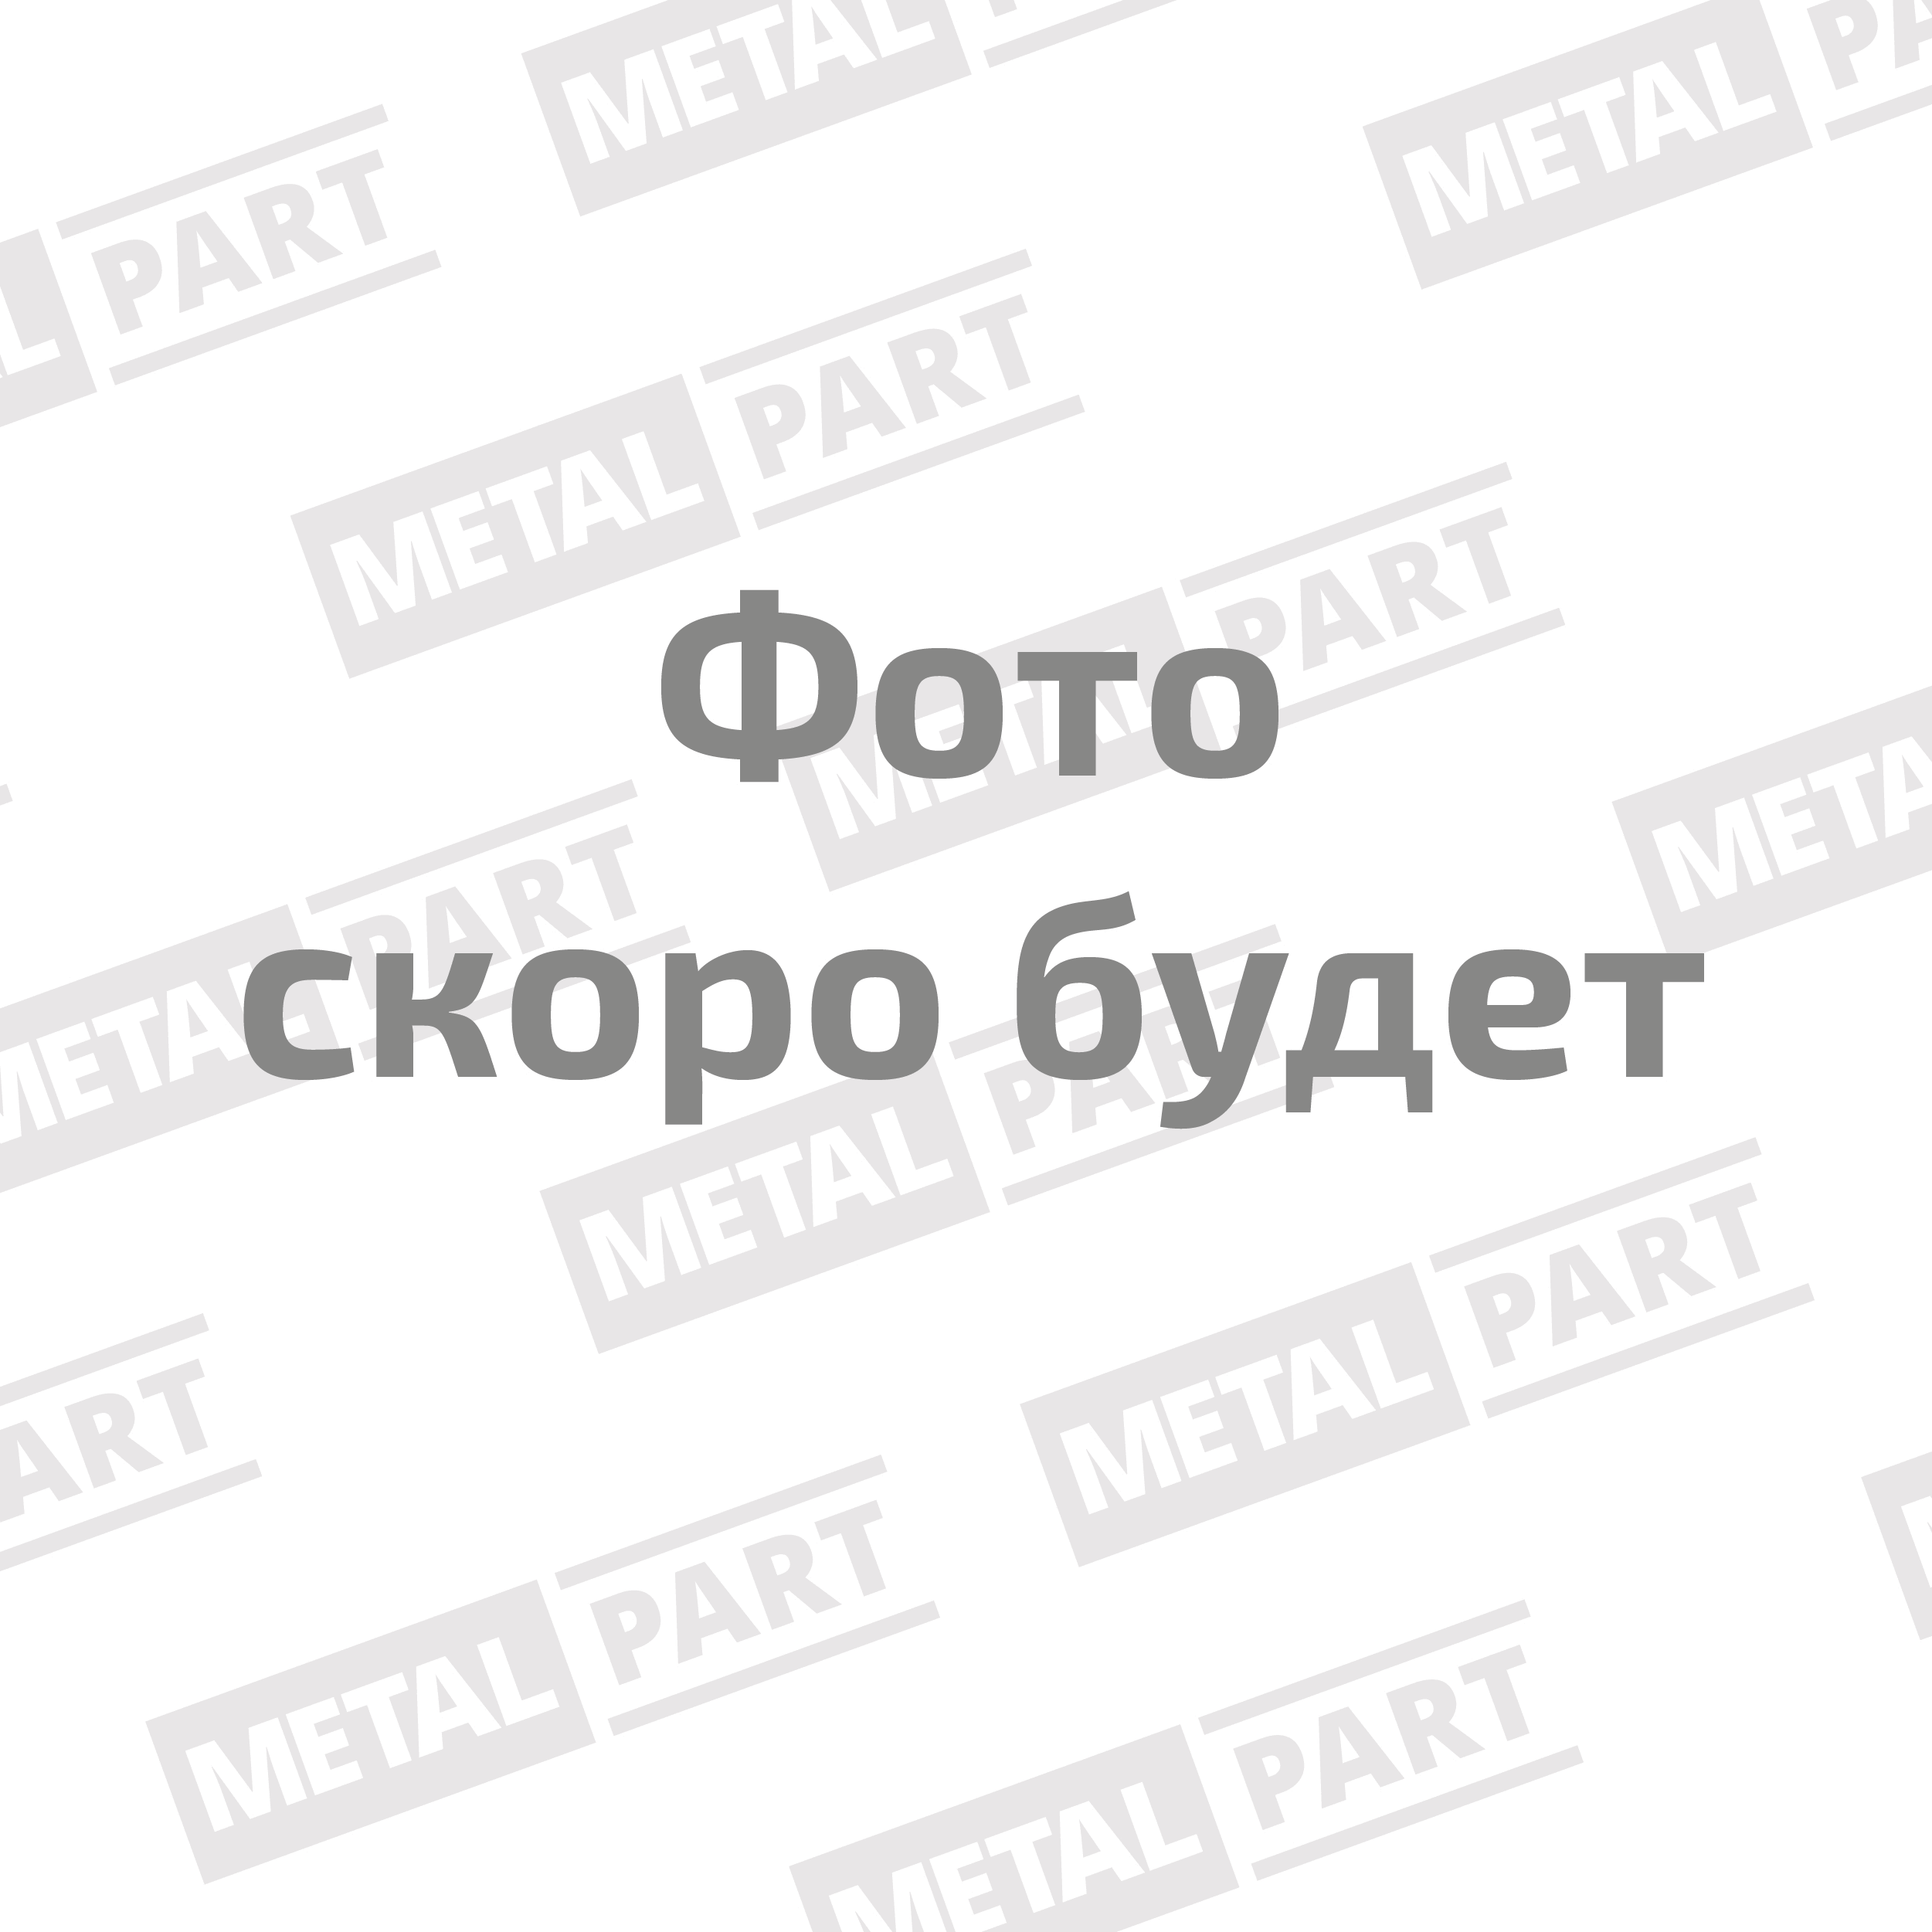 Ролик опорный привода агрегатов "MetalPart" для автомобилей УАЗ с двигателем ЗМЗ-51432 Евро 4